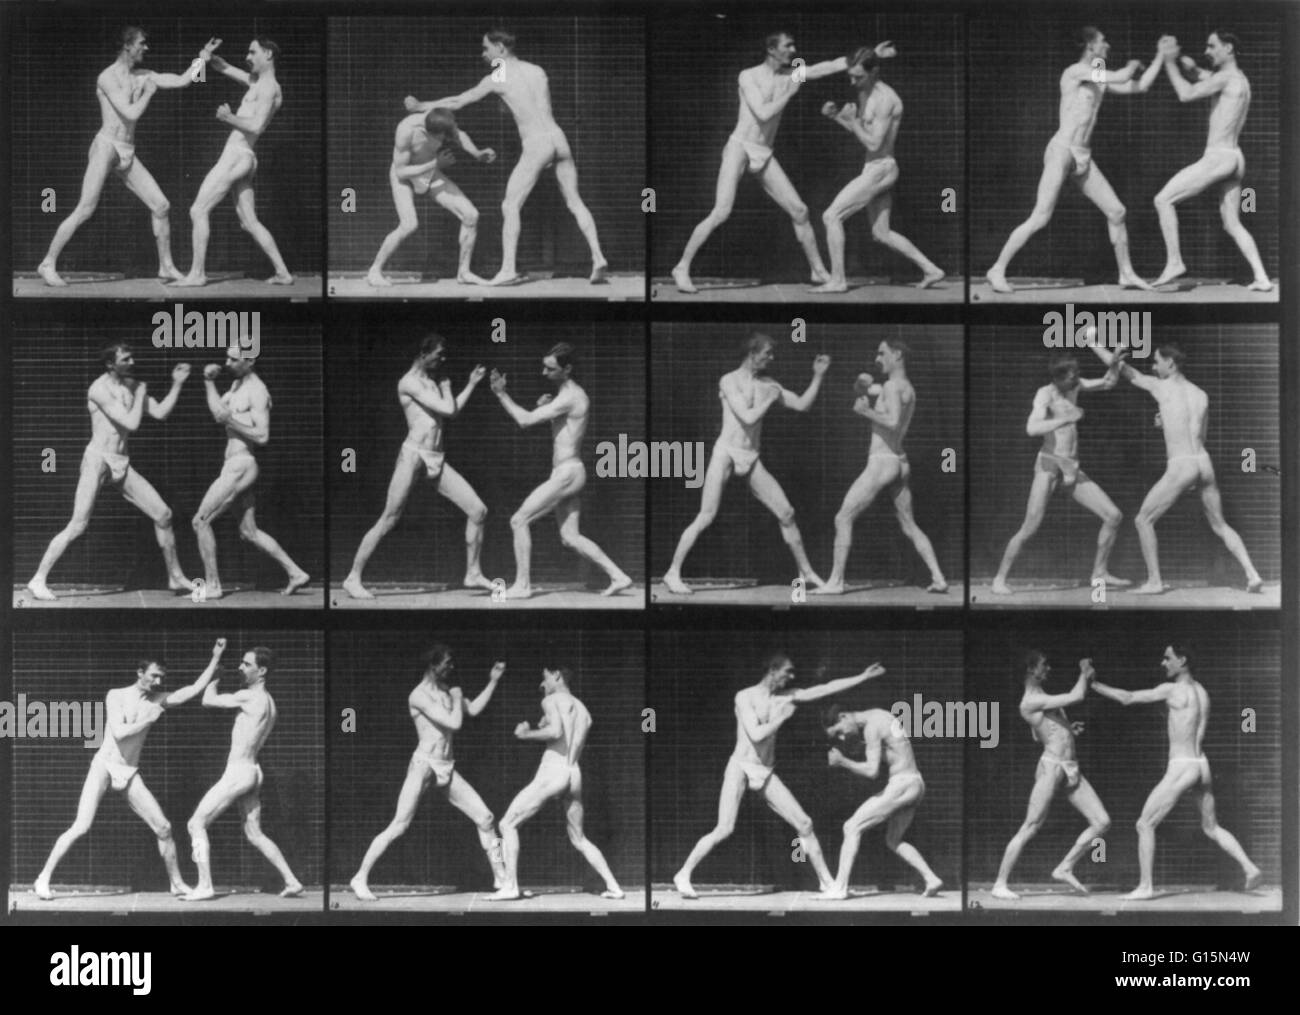 Muybridge la locomotion humaine, les hommes de boxe, 1887. Motion picture frame 12 de deux hommes la boxe. Eadweard James Muybridge (9 avril 1830 - 8 mai 1904) était un photographe anglais important pour son travail de pionnier dans les études photographiques de motion et en mouvement-p Banque D'Images